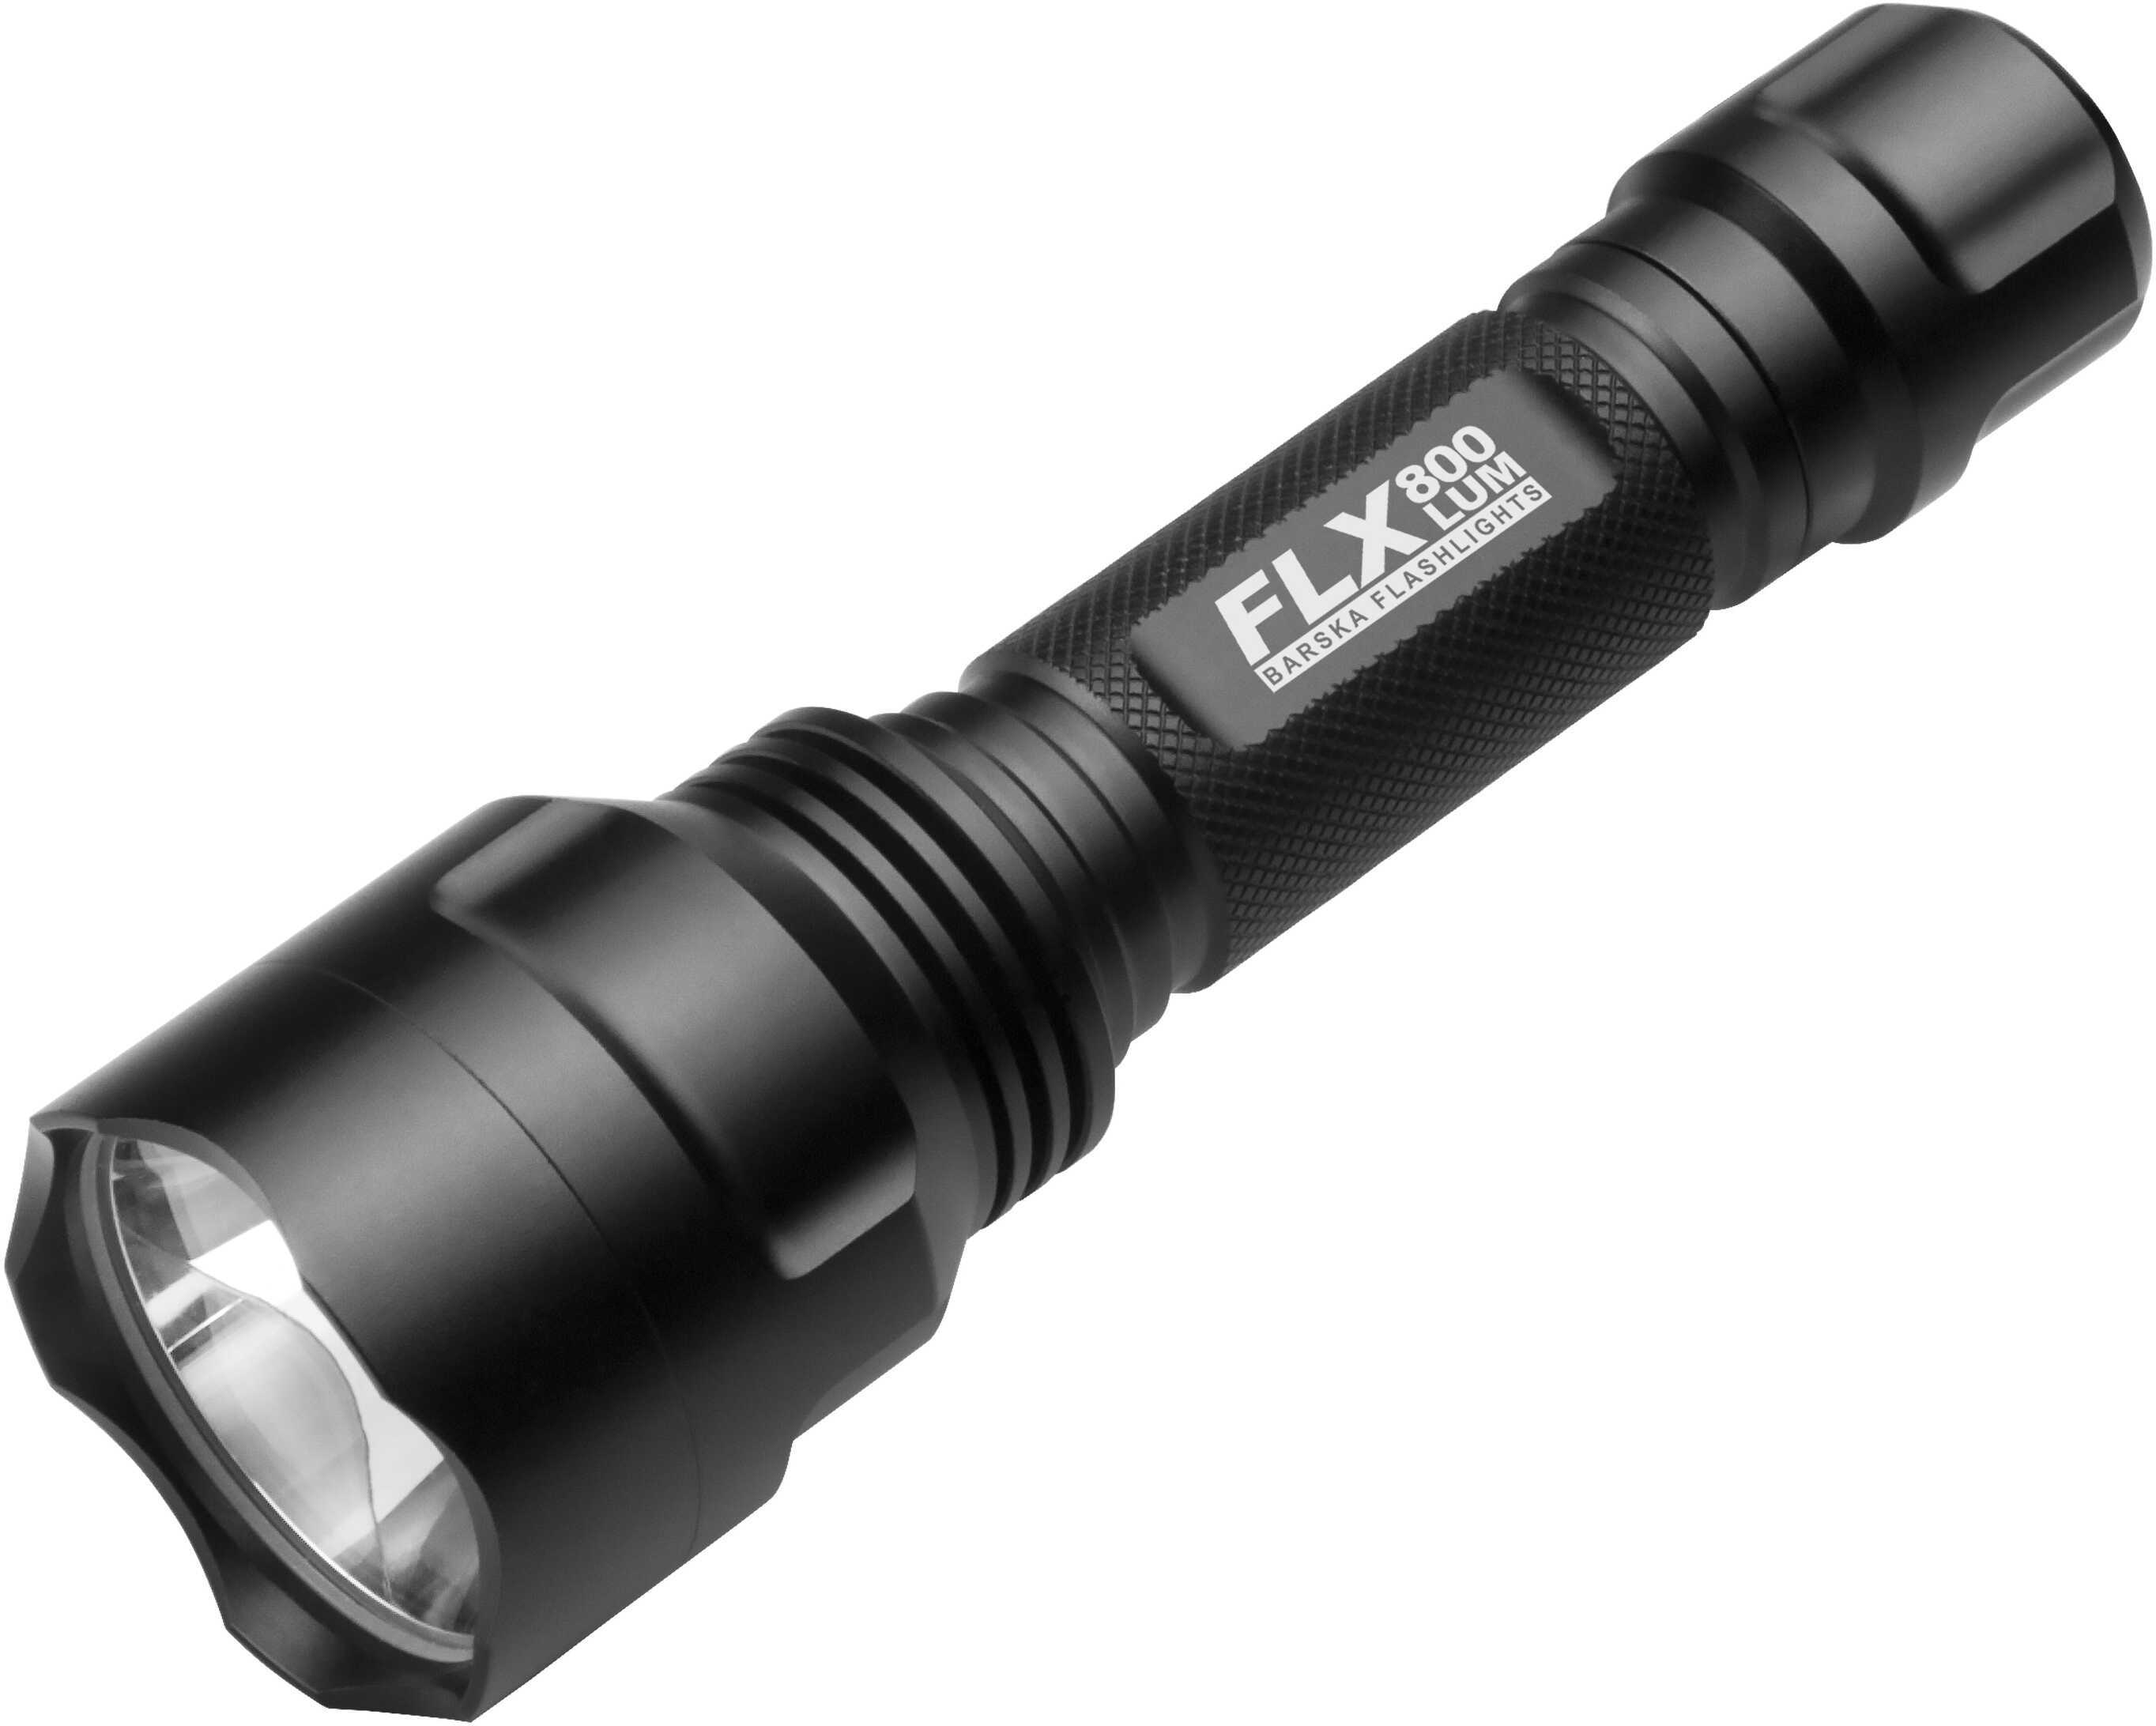 Barska Optics 800 Lumen LED Flashlight - Black BA12196